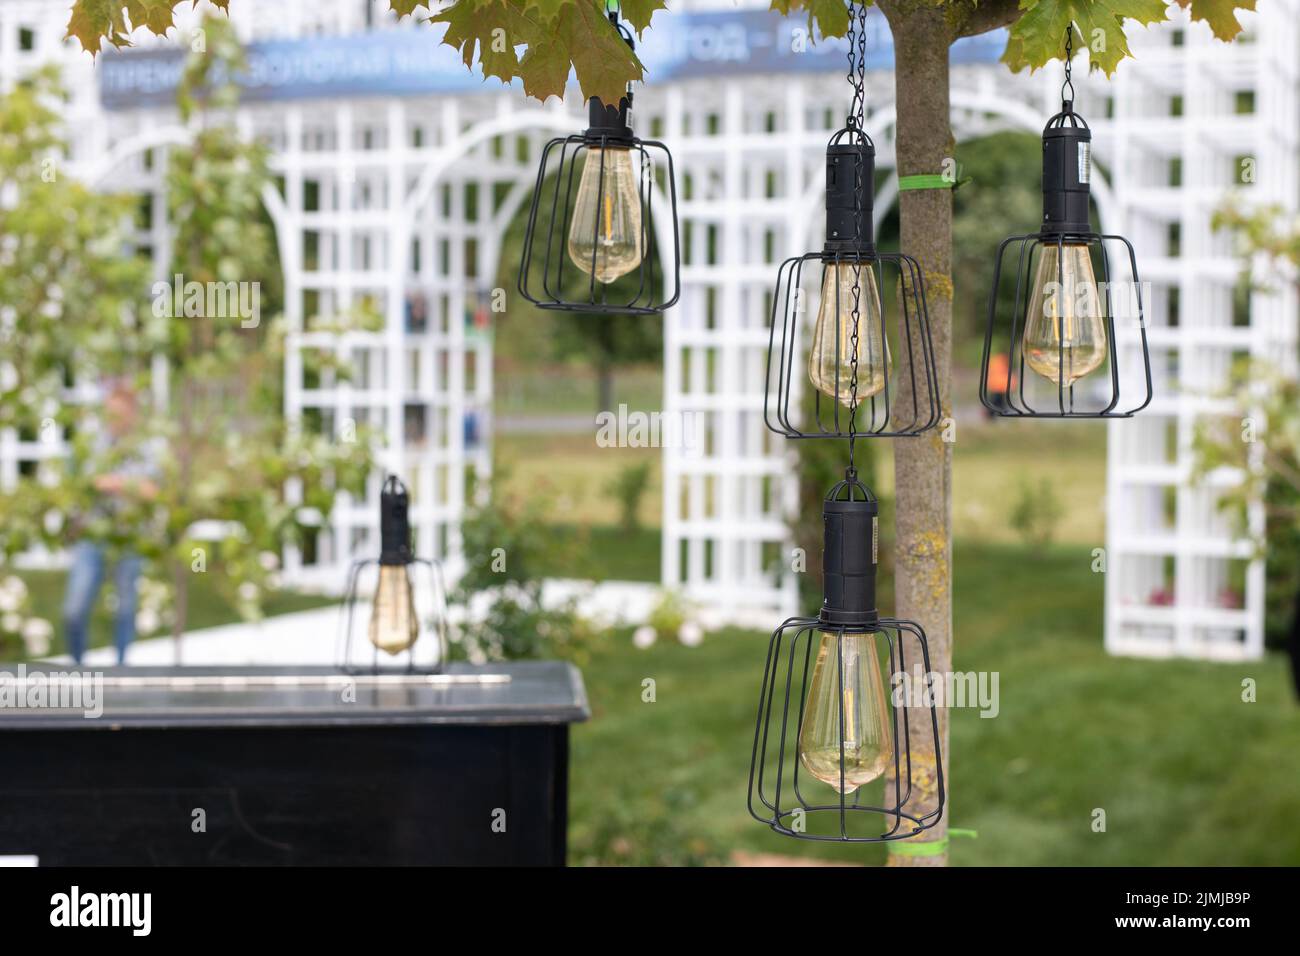 Lanternes décoratives avec lampes pour les fêtes en plein air Banque D'Images